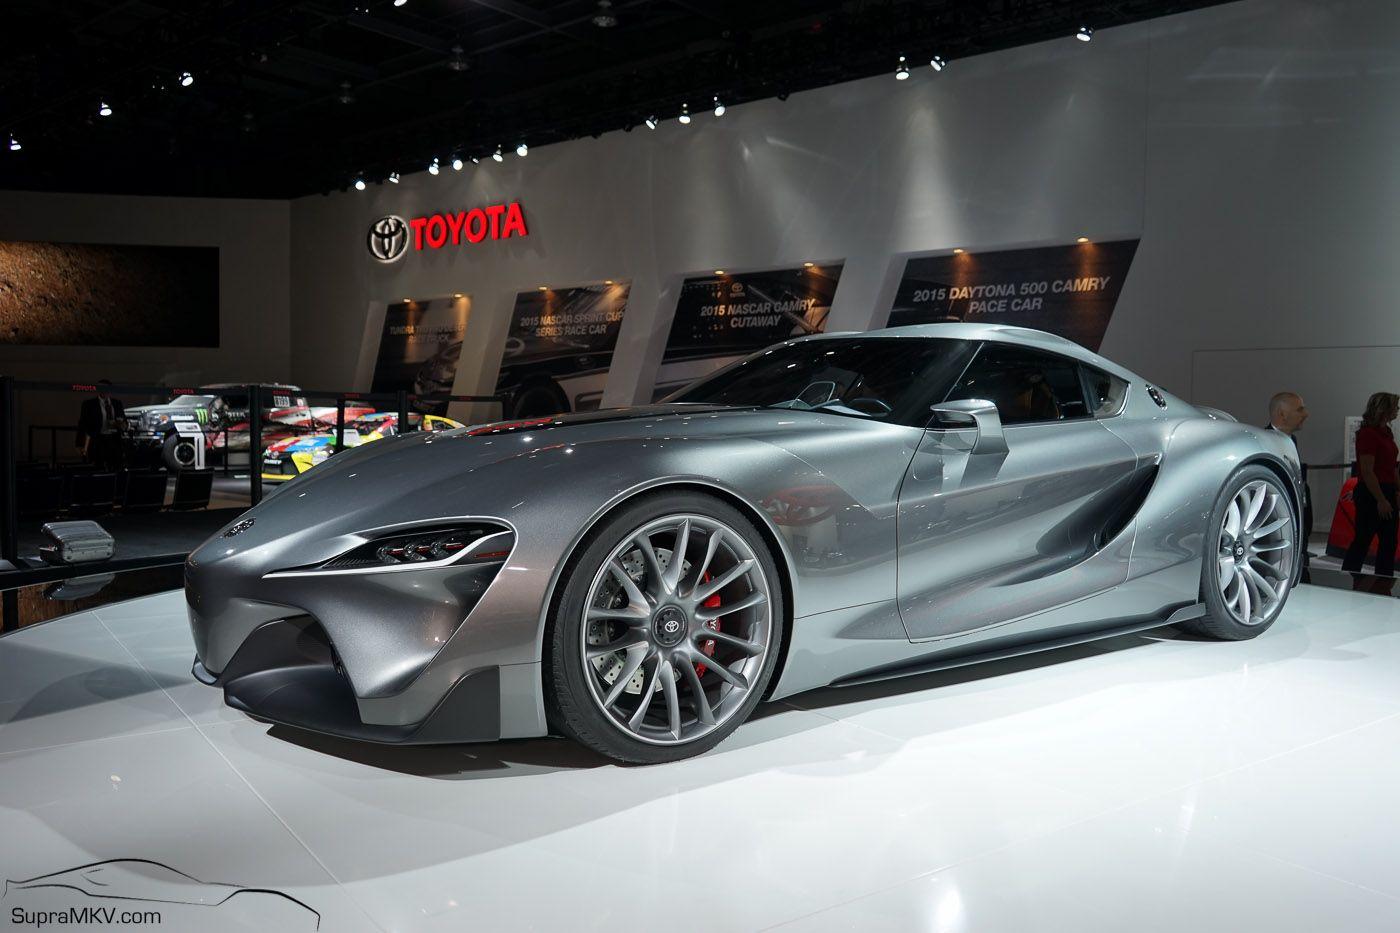 Toyota Supra Spy Photo And Rumor Auto New Auto New